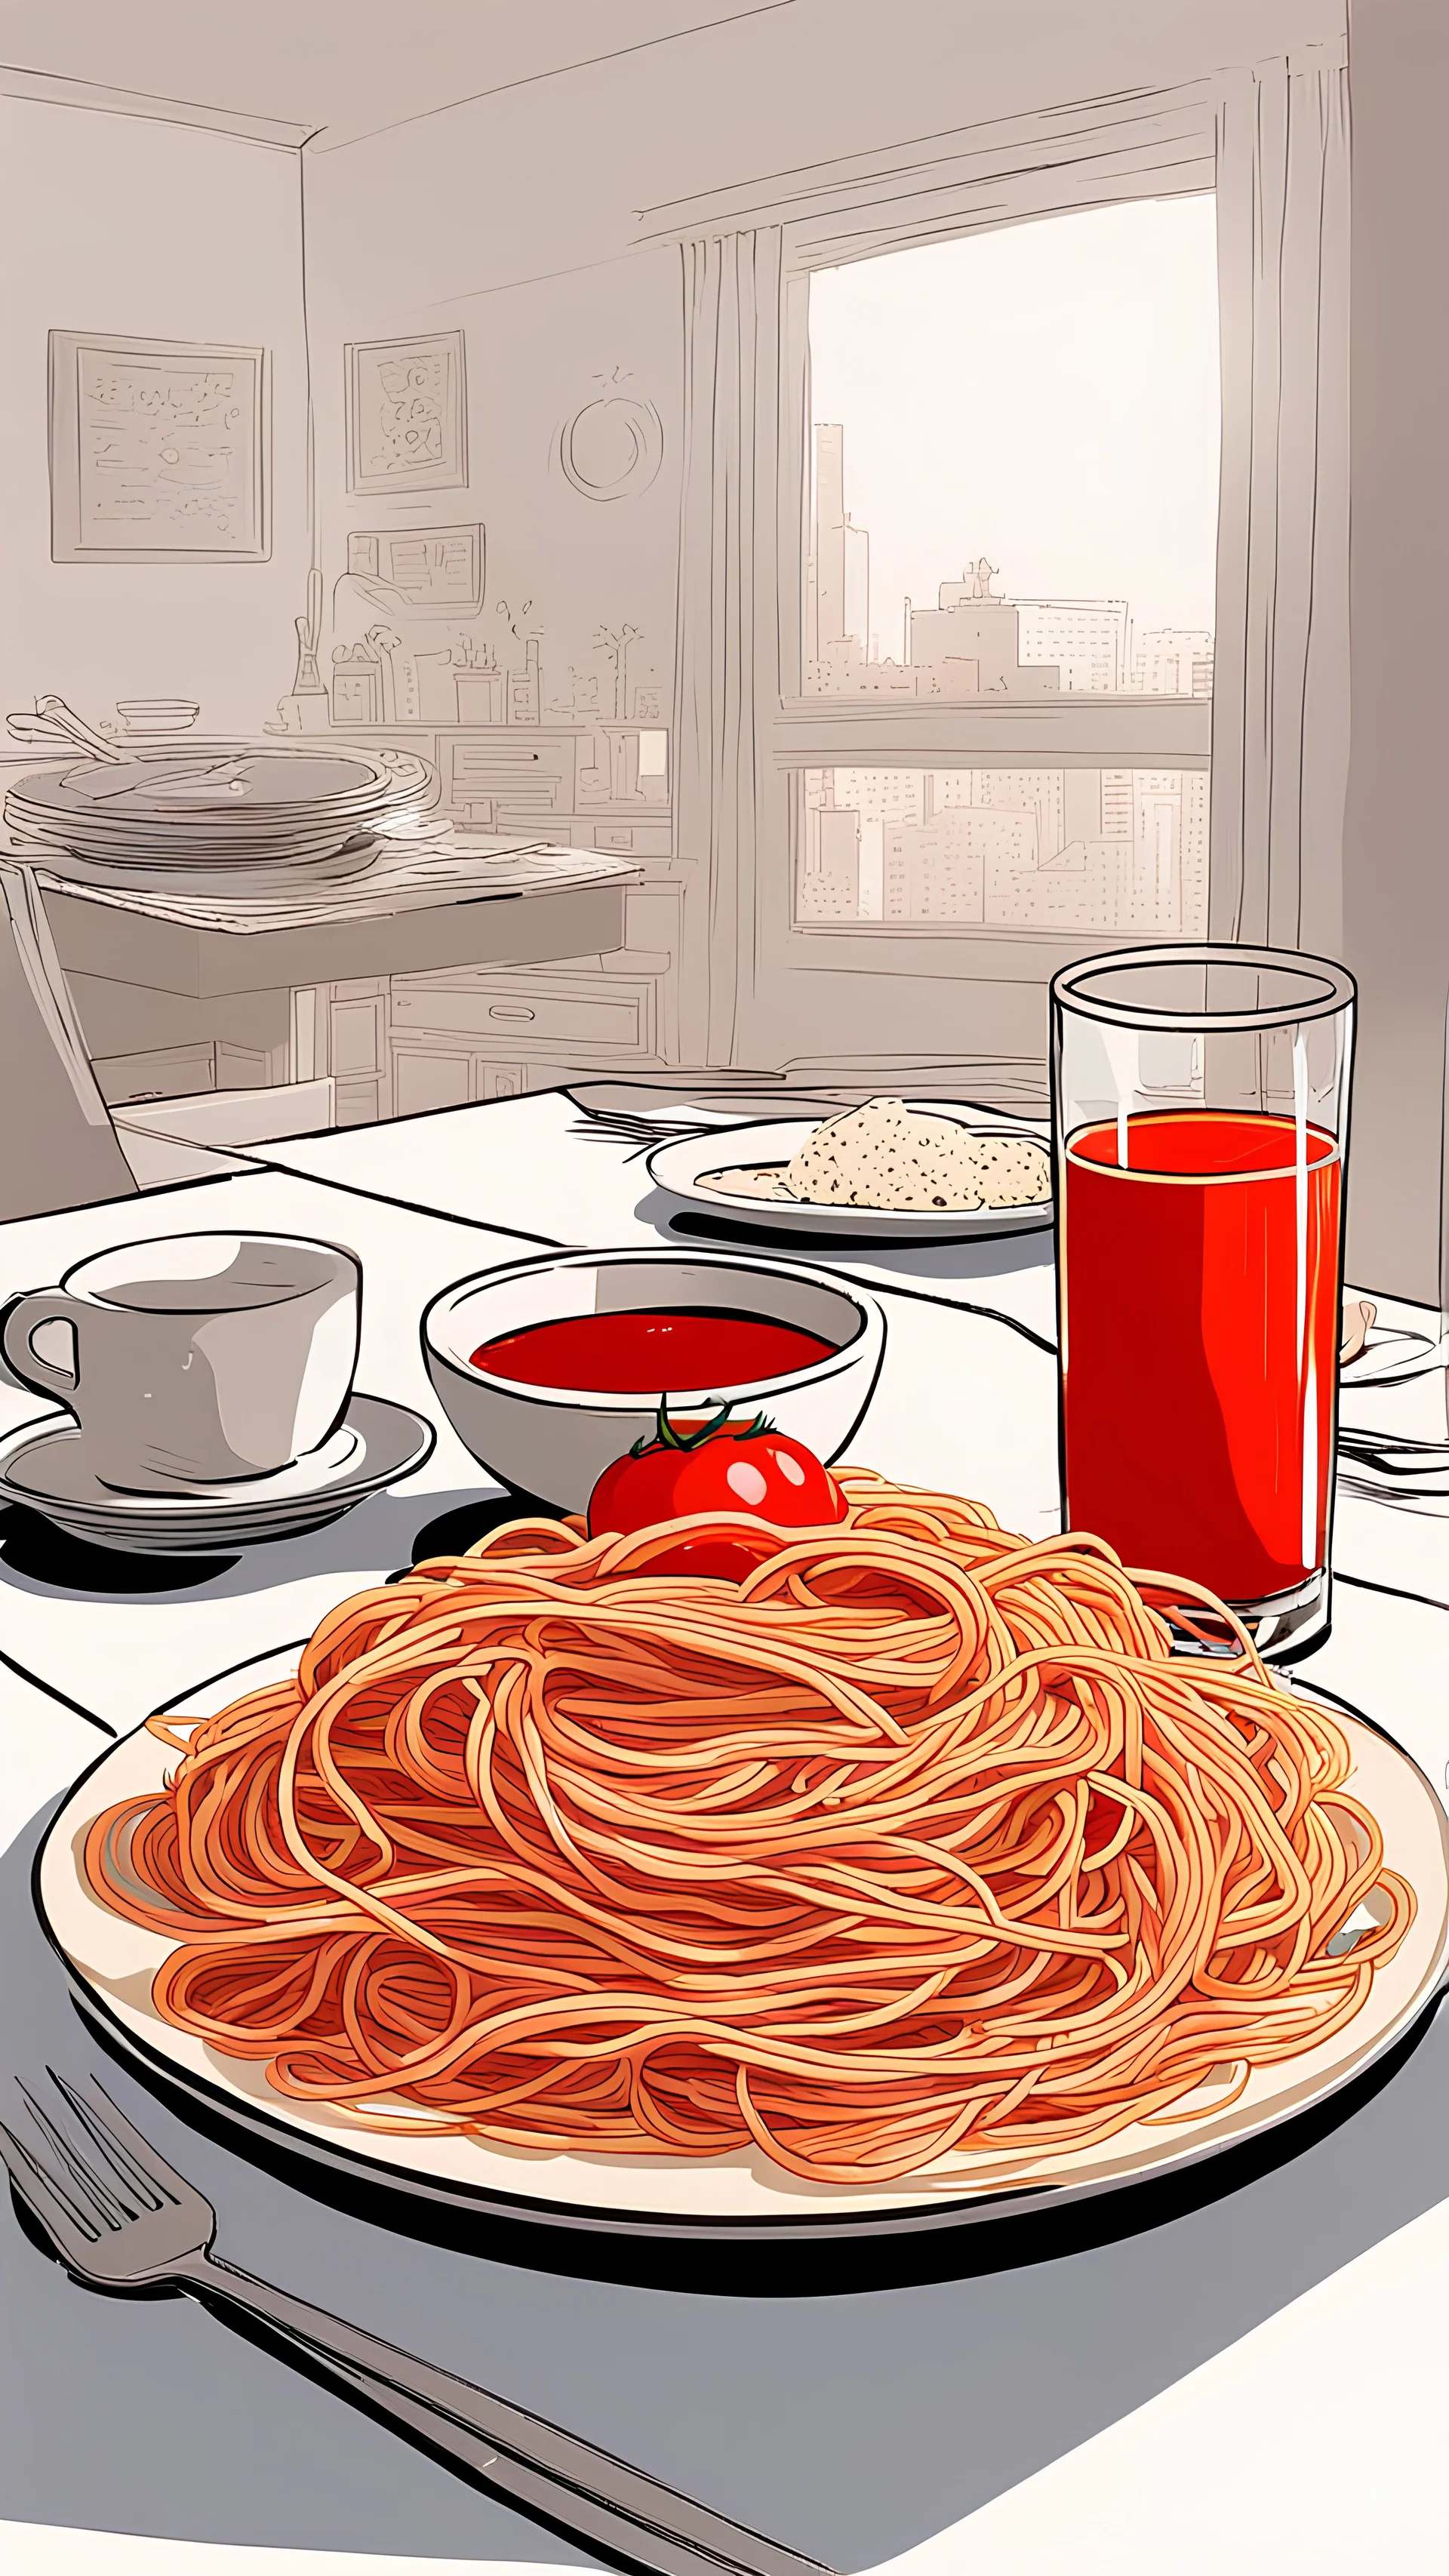 Restaurant to another world recipes - 4. Natto spaghetti - Wattpad